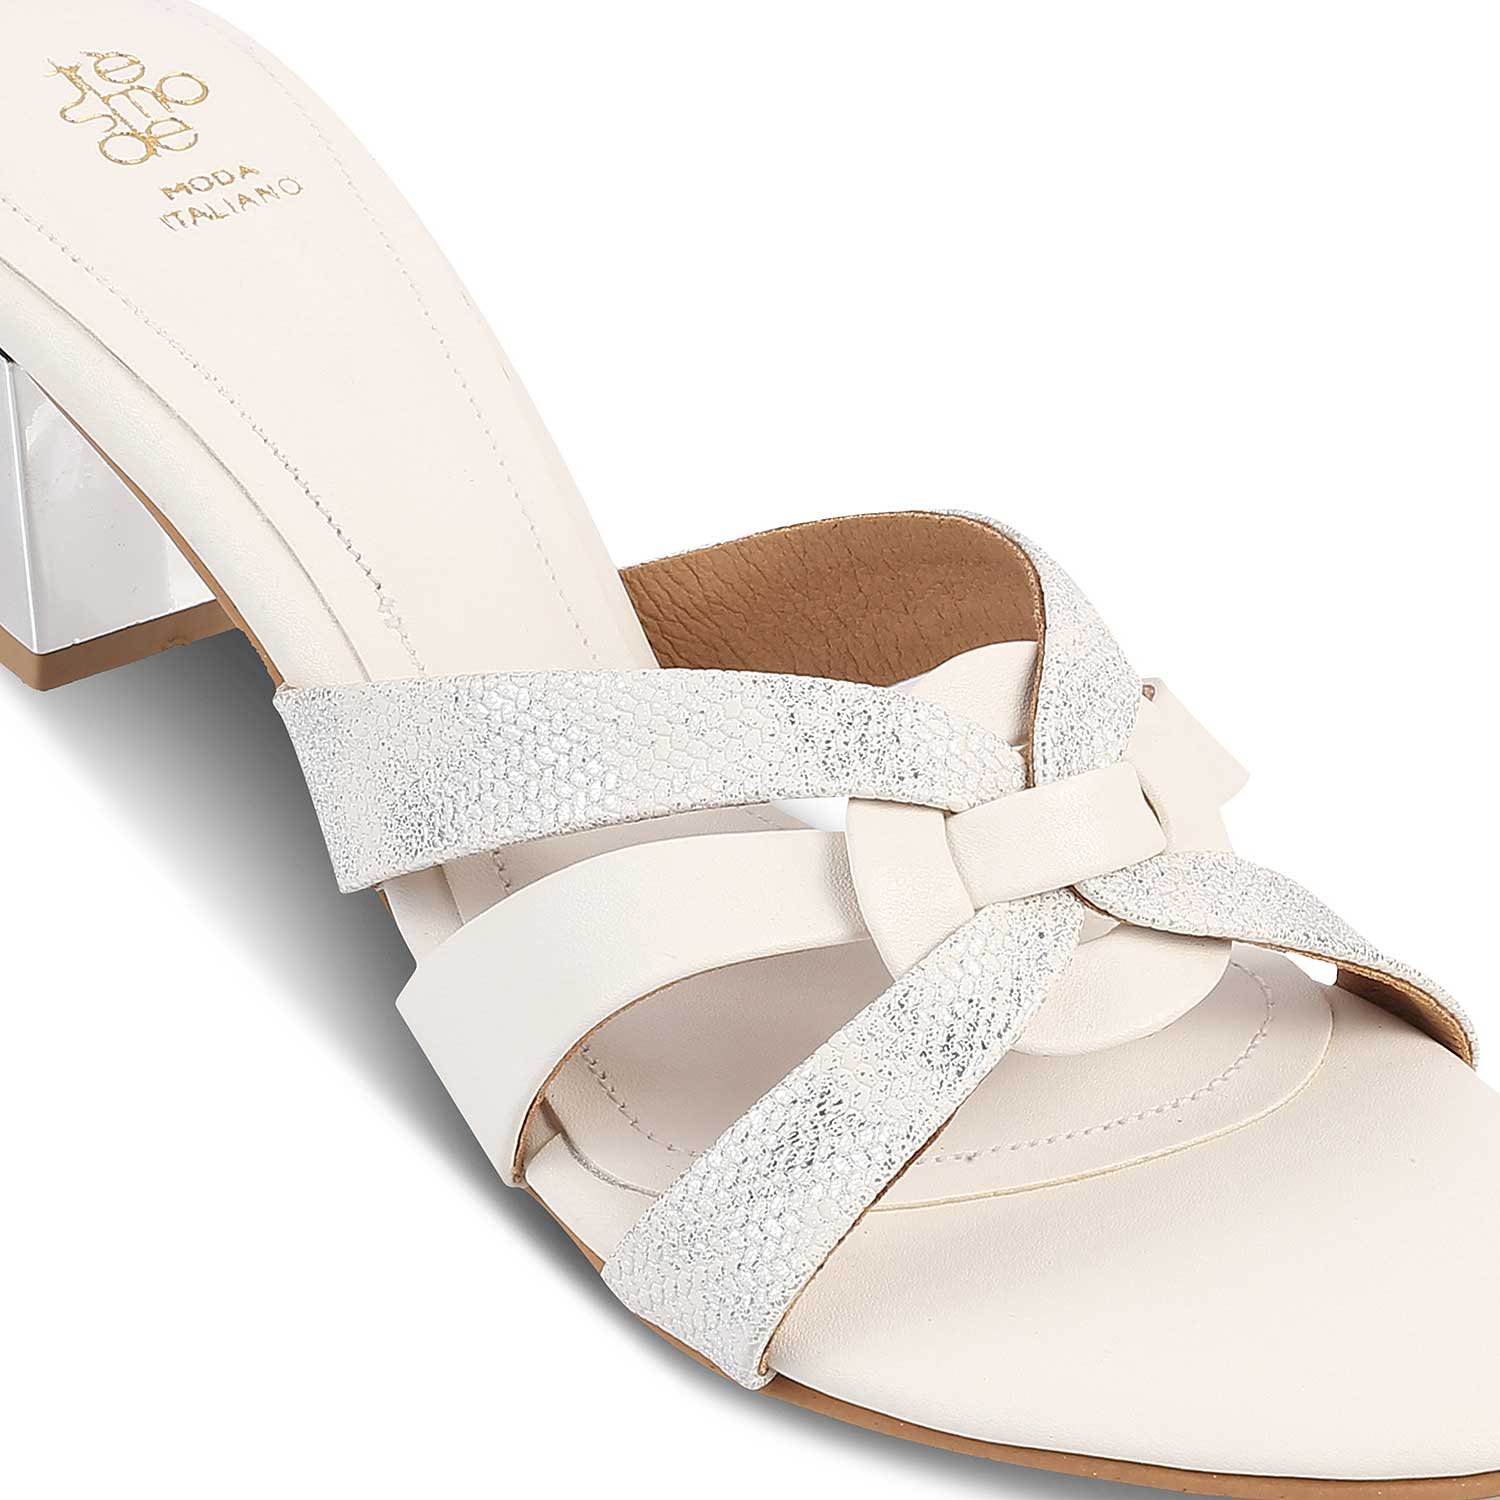 The Elche White Women's Dress Block Heel Sandals Tresmode - Tresmode